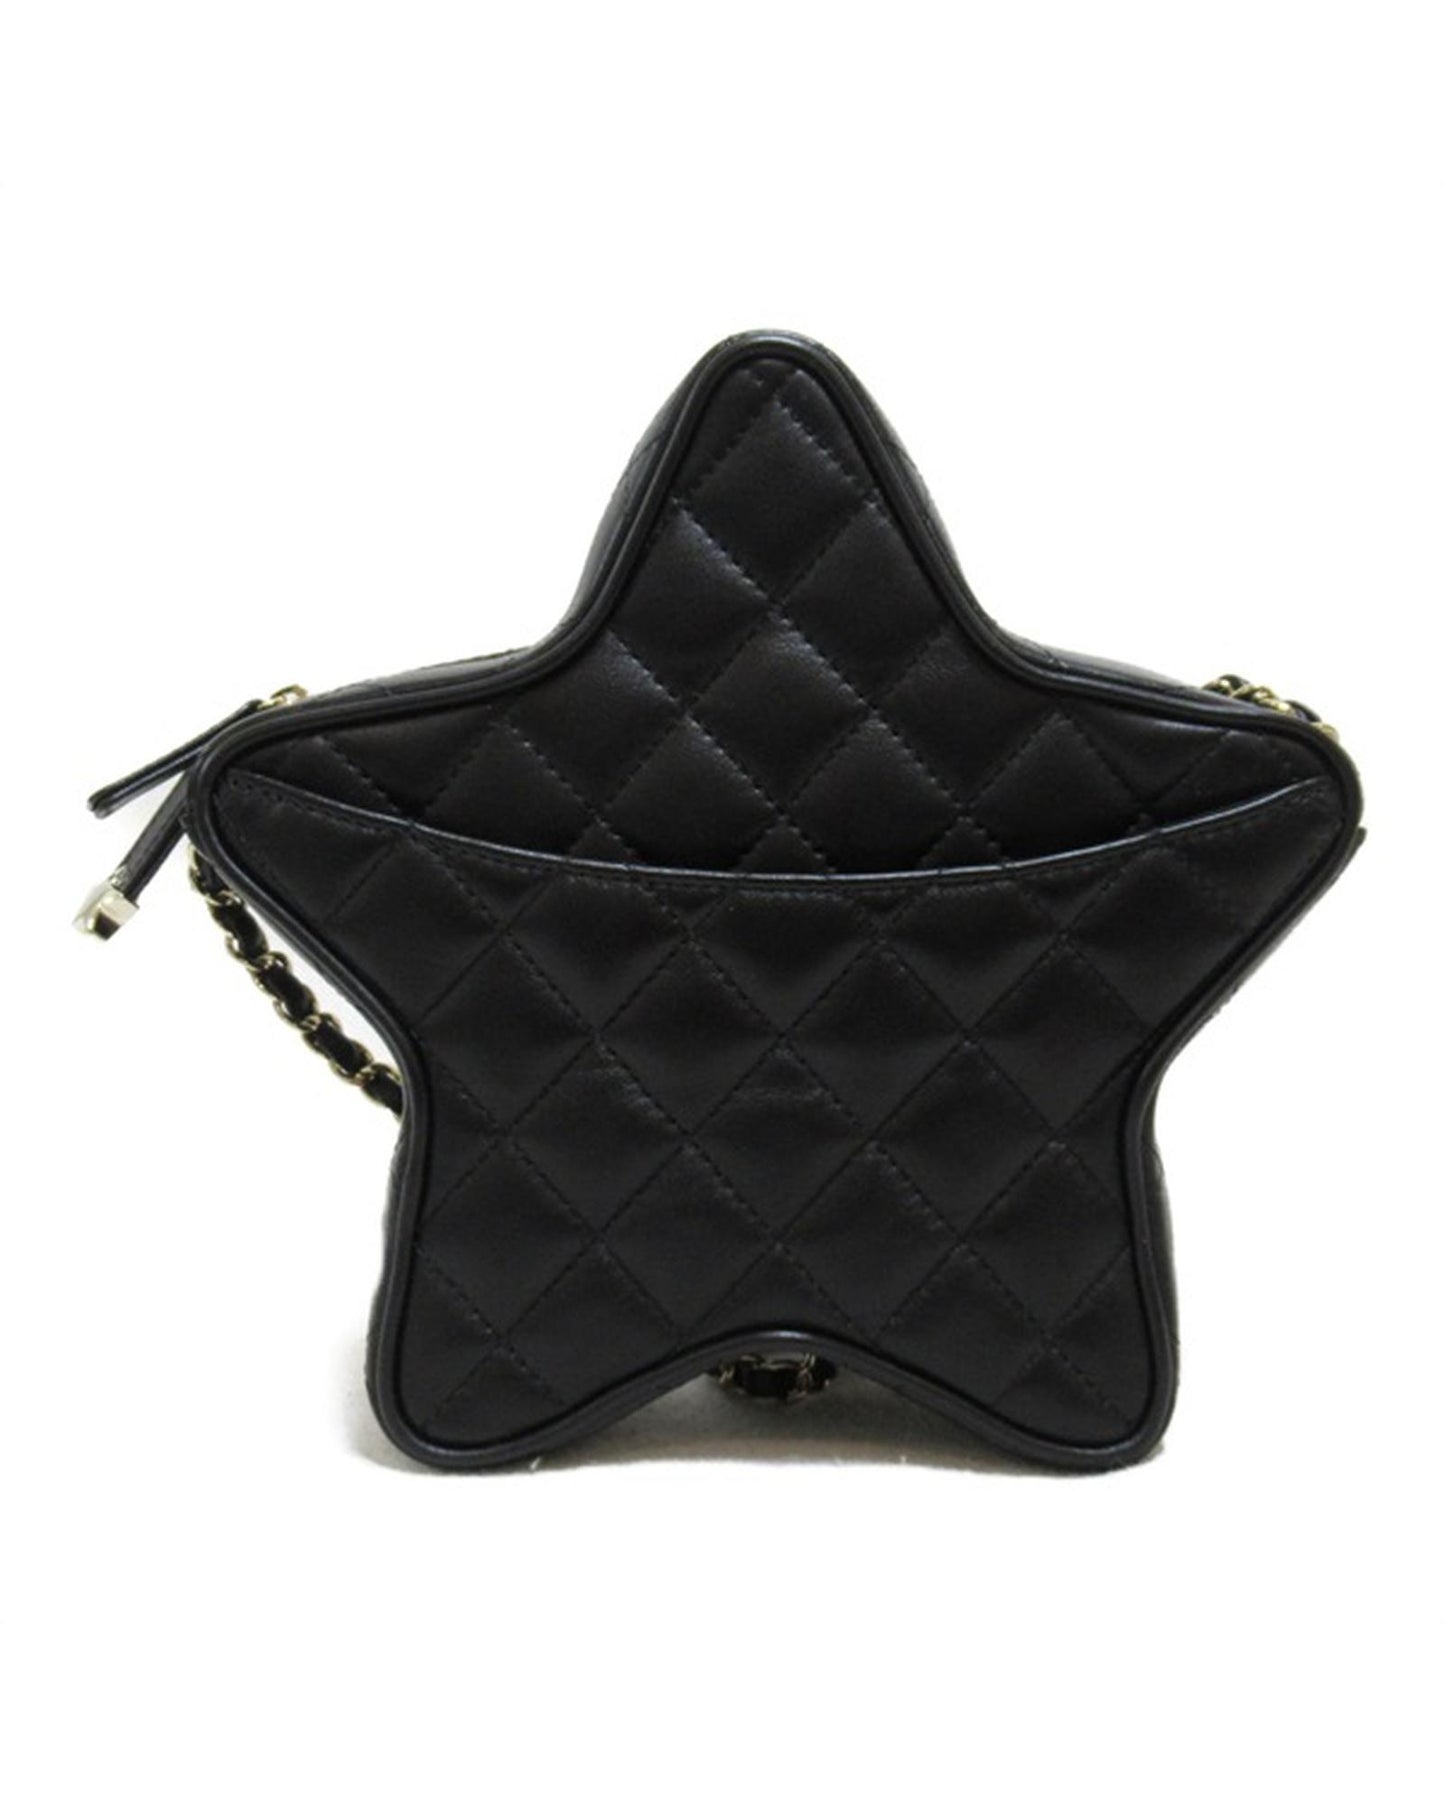 Chanel Women's Matelasse Star Crossbody Bag in Black